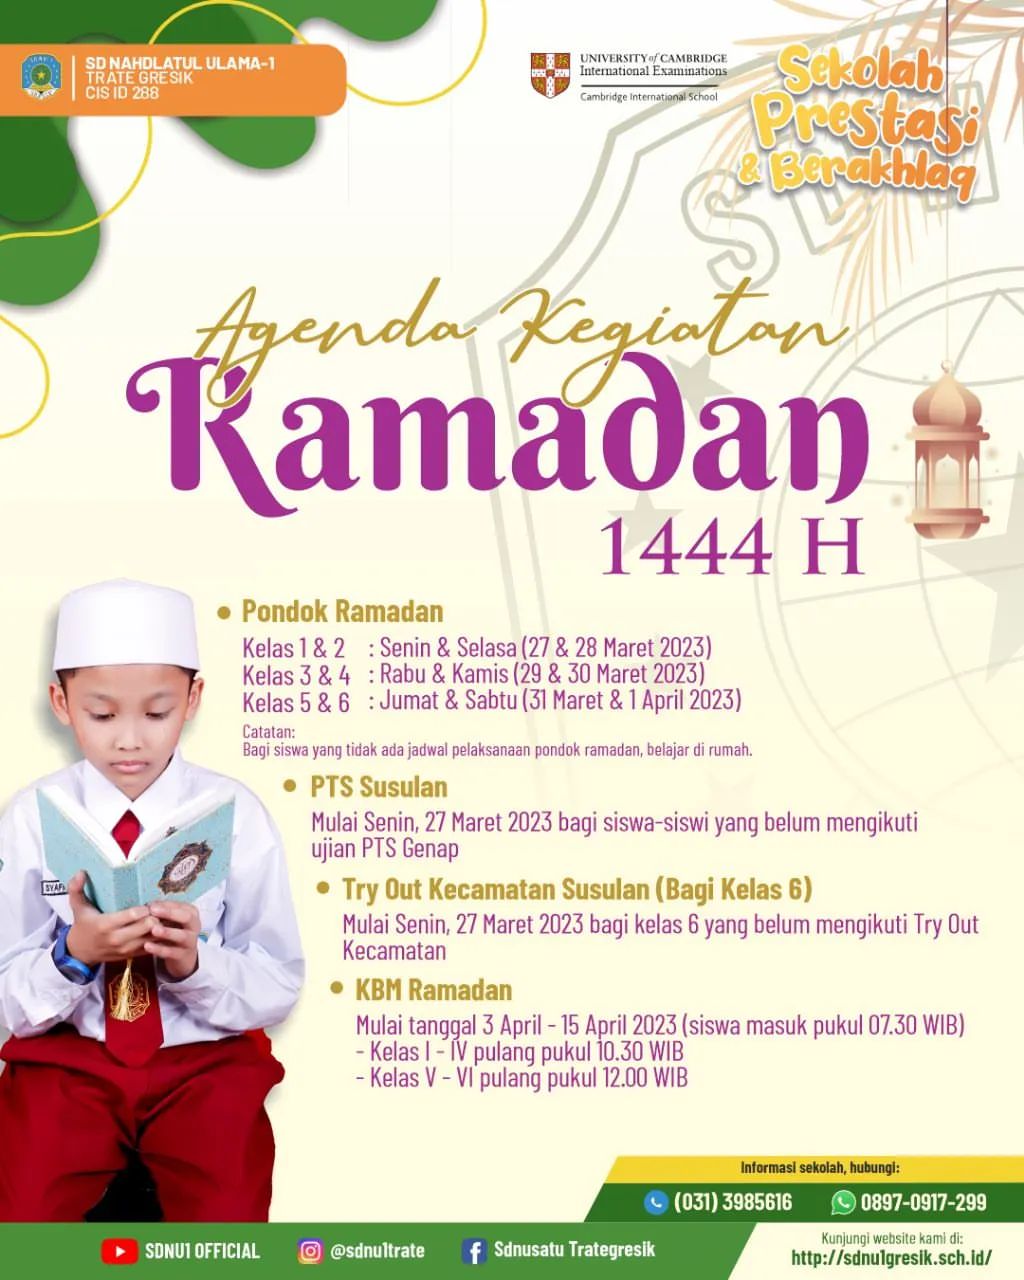 Agenda Kegiatan Ramadhan 1444H